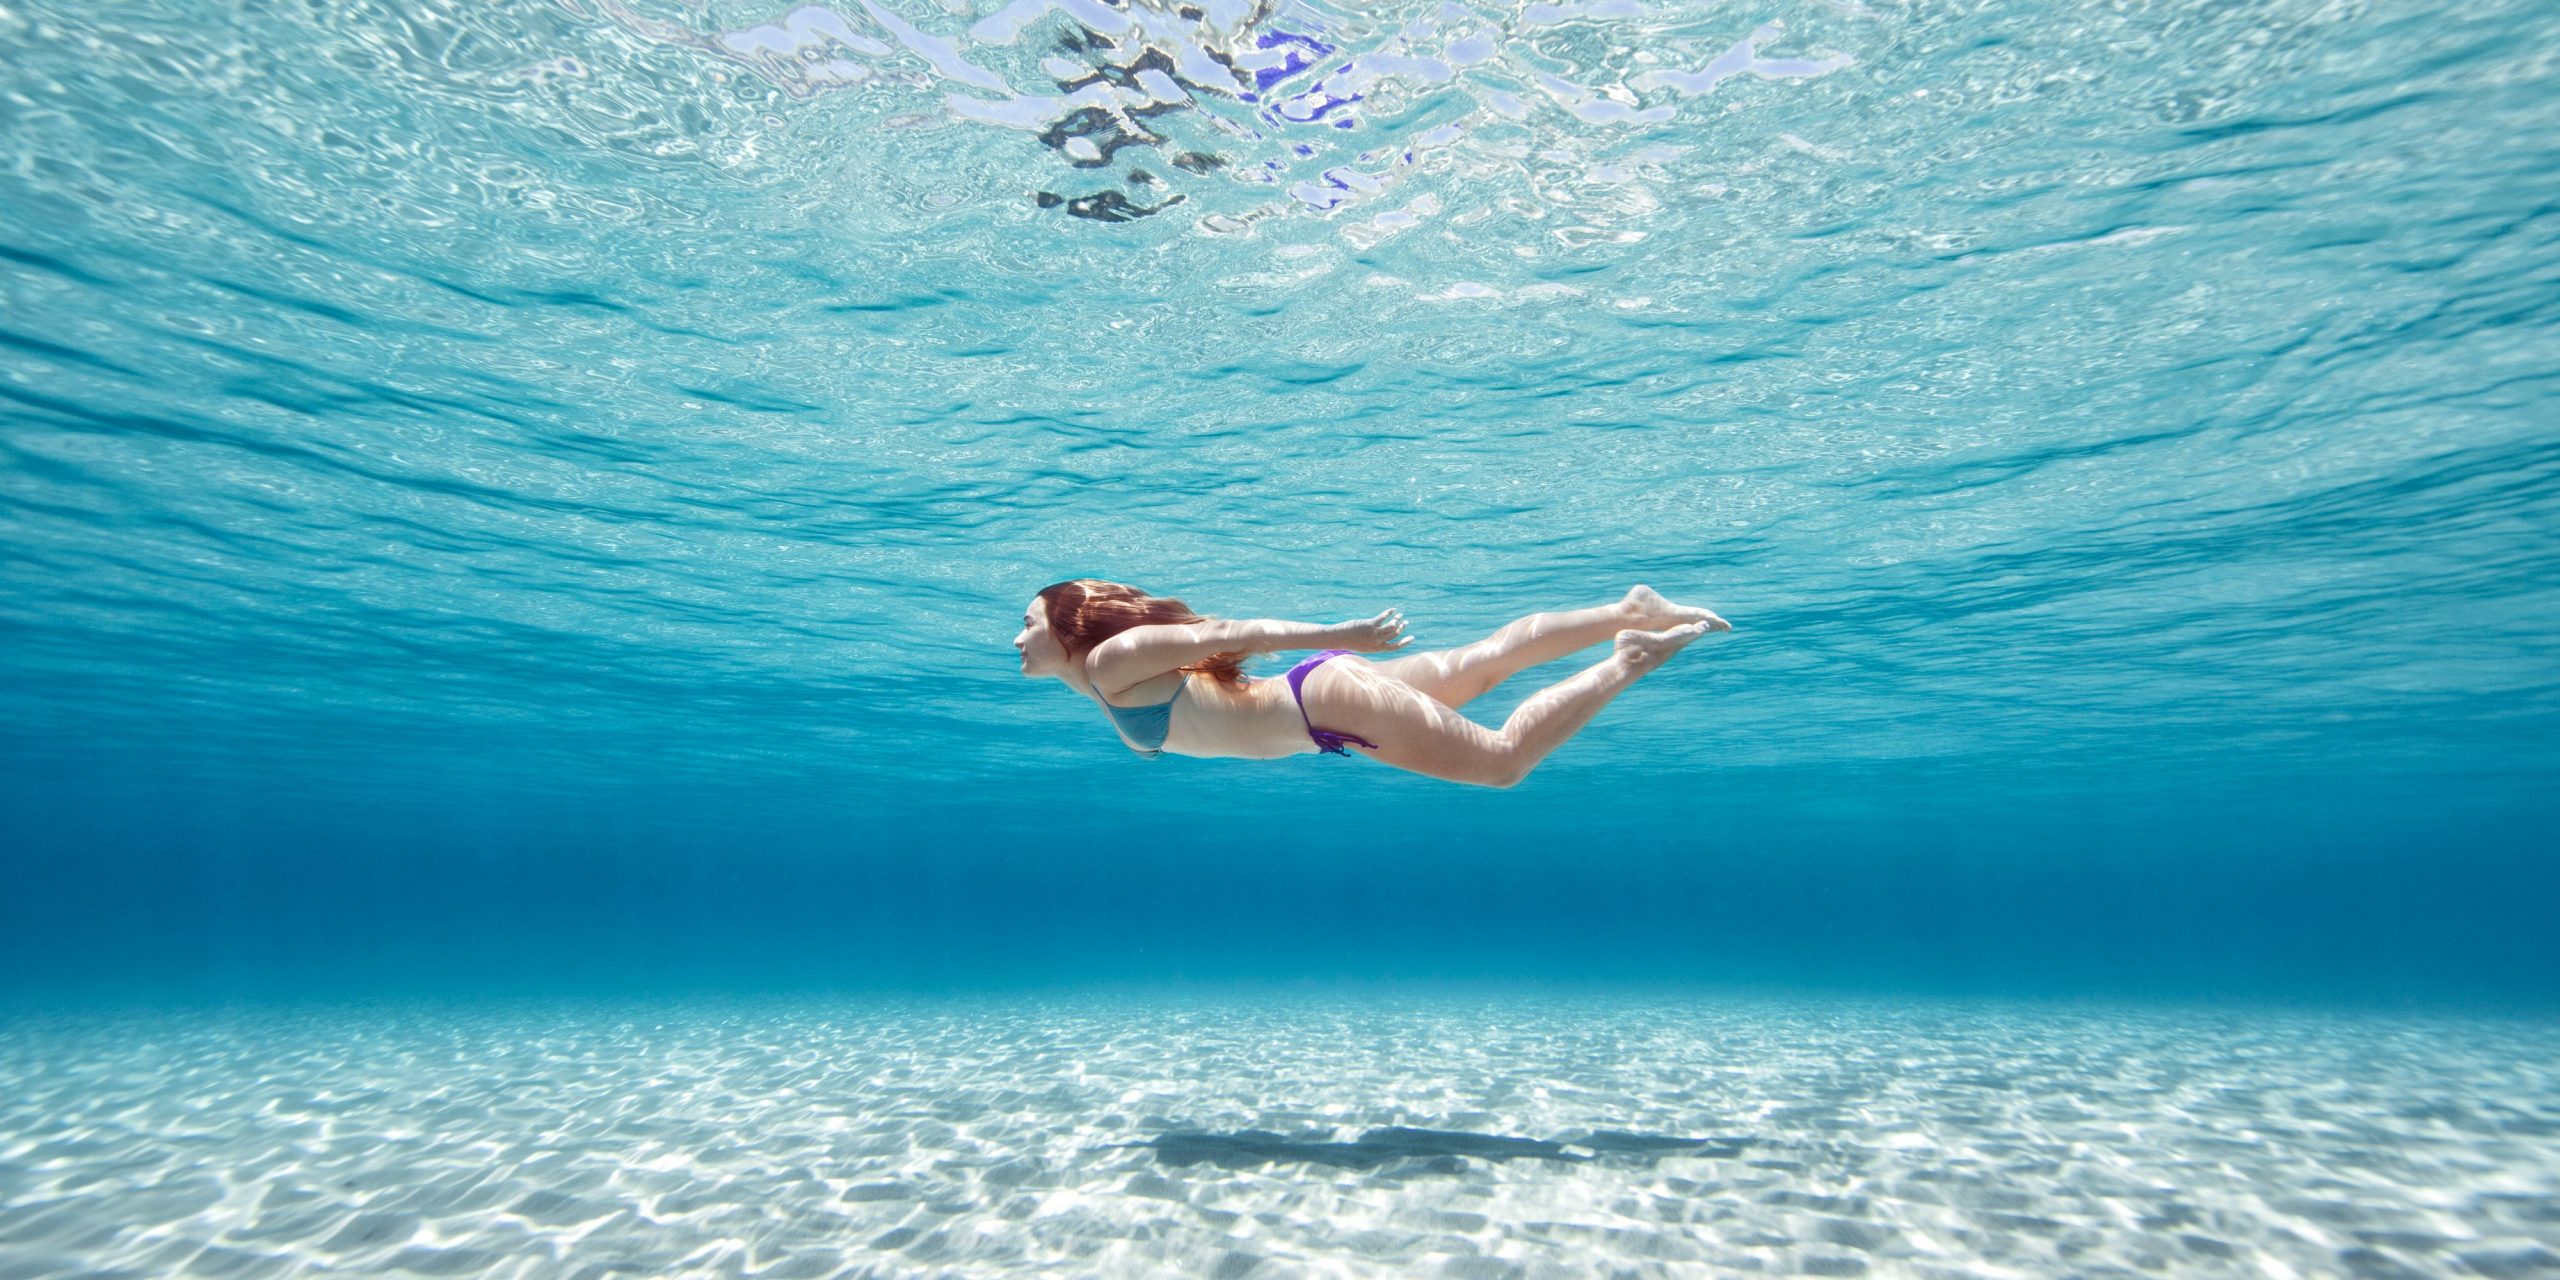 Κολύμπι: H κολύμβηση κατά τη διάρκεια της περιόδου είναι και ασφαλής και ωφέλιμη [vid]